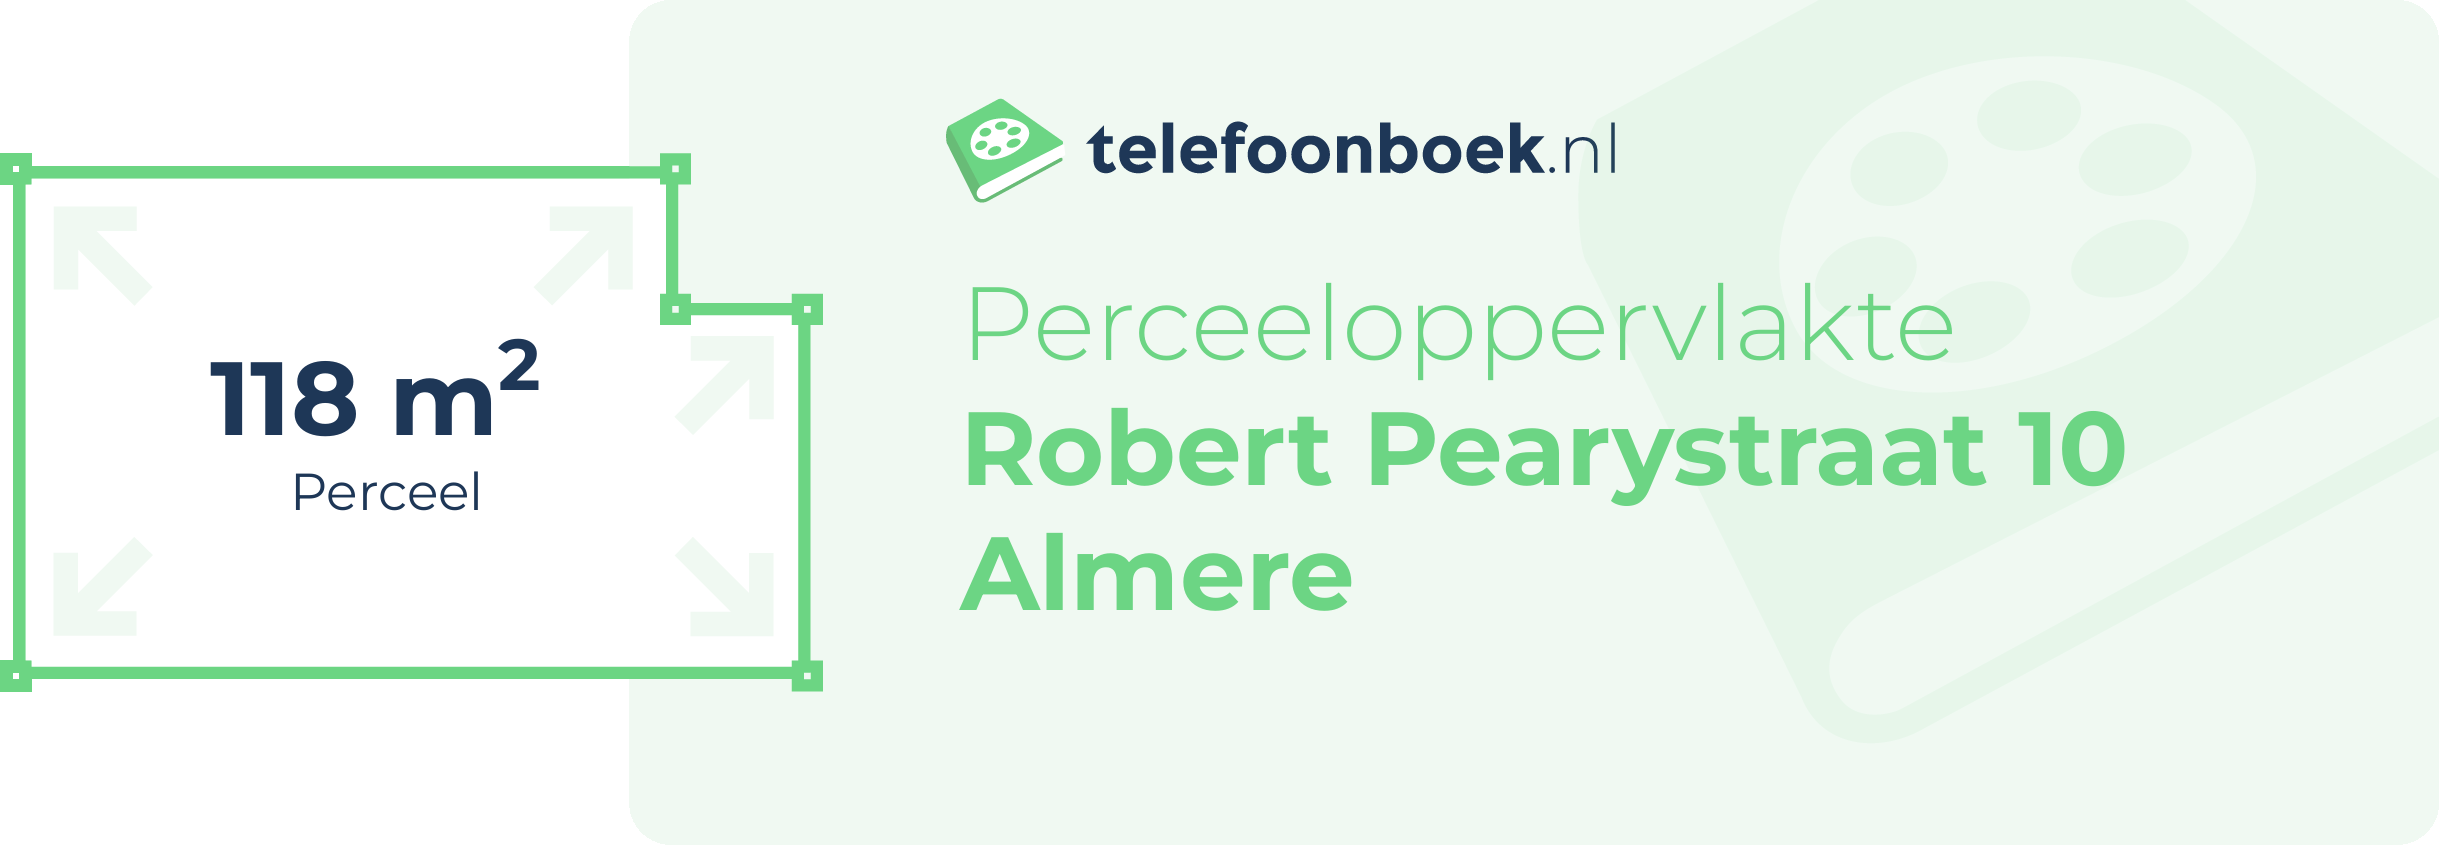 Perceeloppervlakte Robert Pearystraat 10 Almere